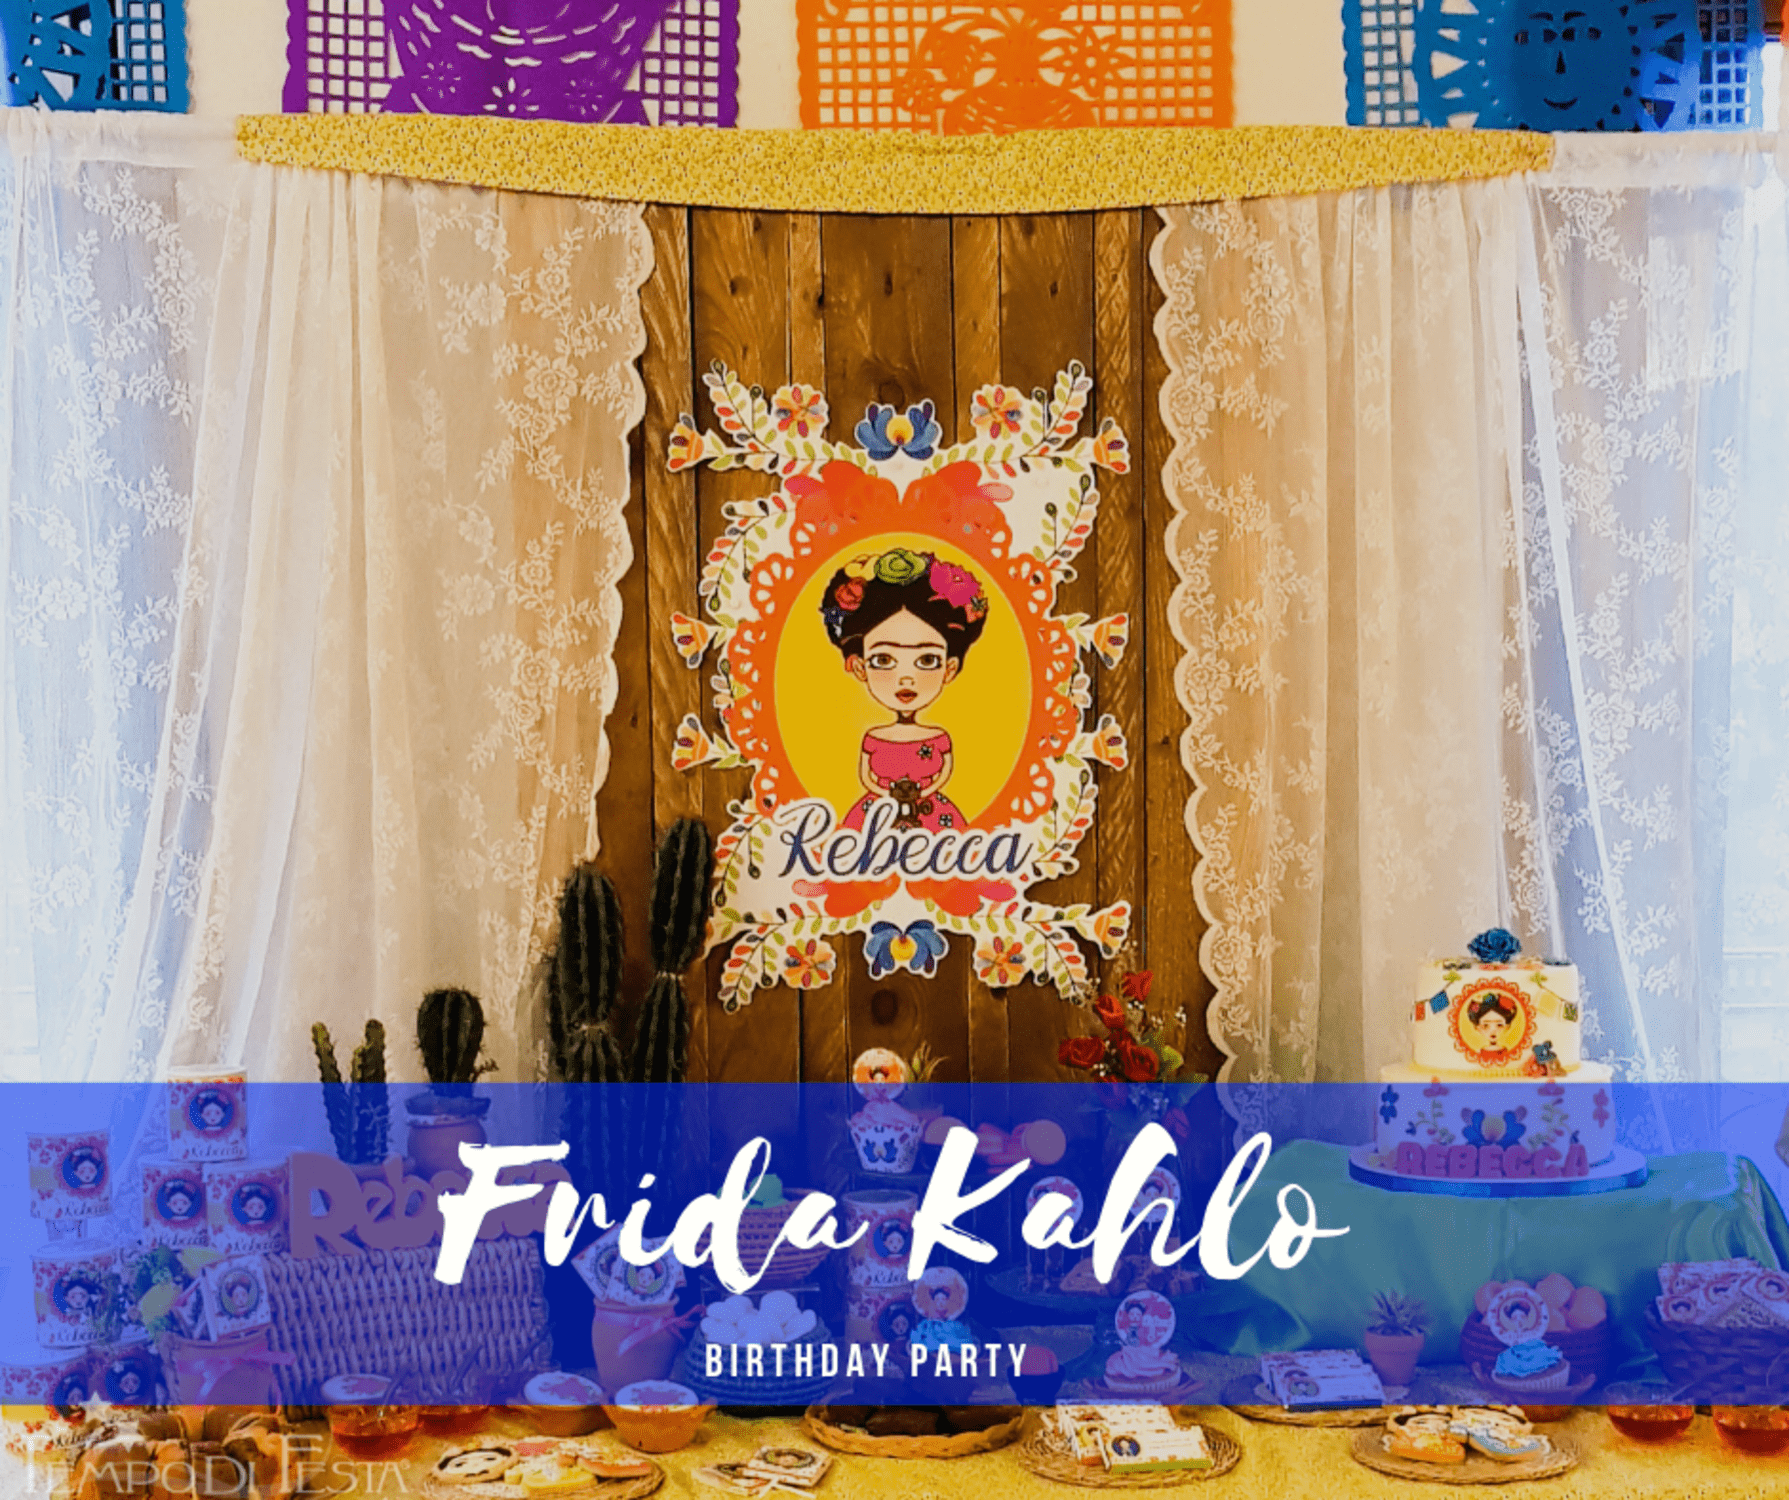 Frida kahlo Party